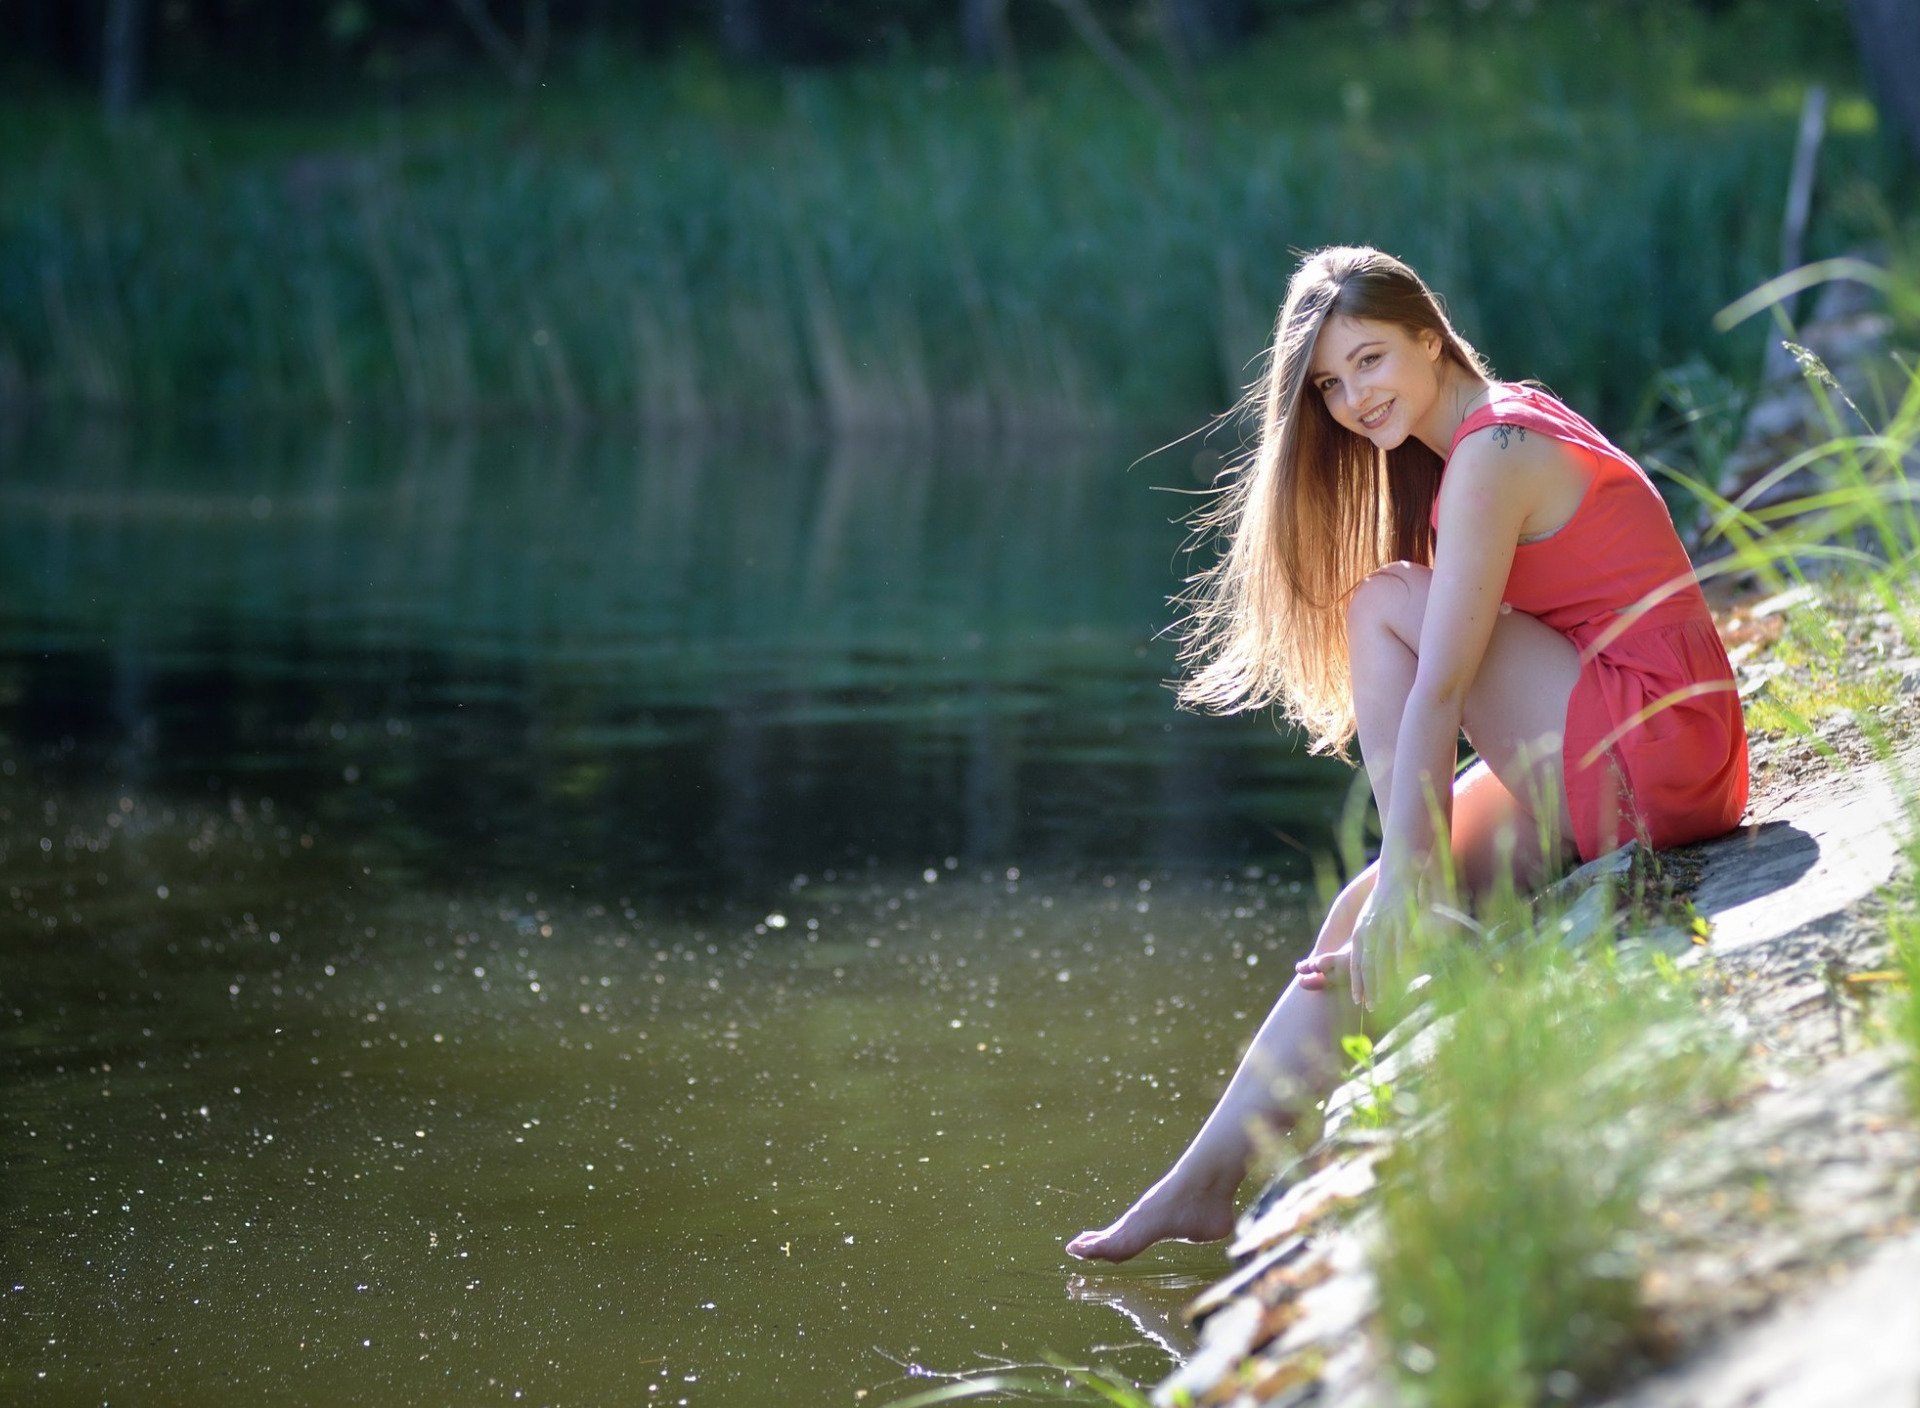 Подружка речка. Dana Гергардта. Dana Гергардта купальник. Фотосессия на пруду. Девушка у реки.